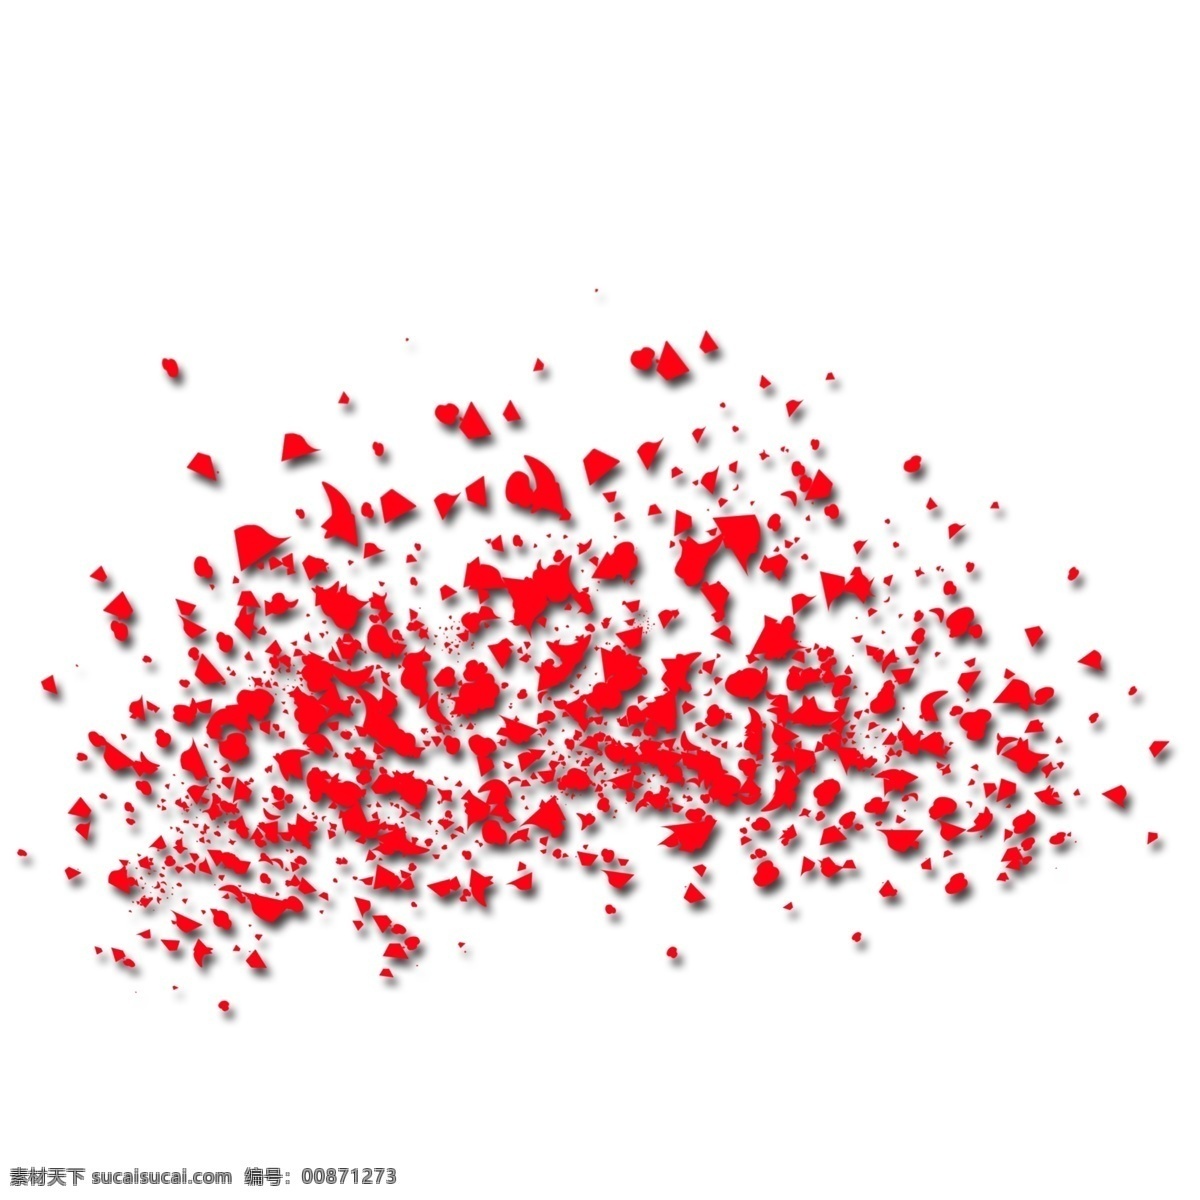 红色 血 点 分布图 标题 光柱 阴影 恐怖 效果装饰 抽象立体 水彩 红色血点 简约手绘 血斑抽象